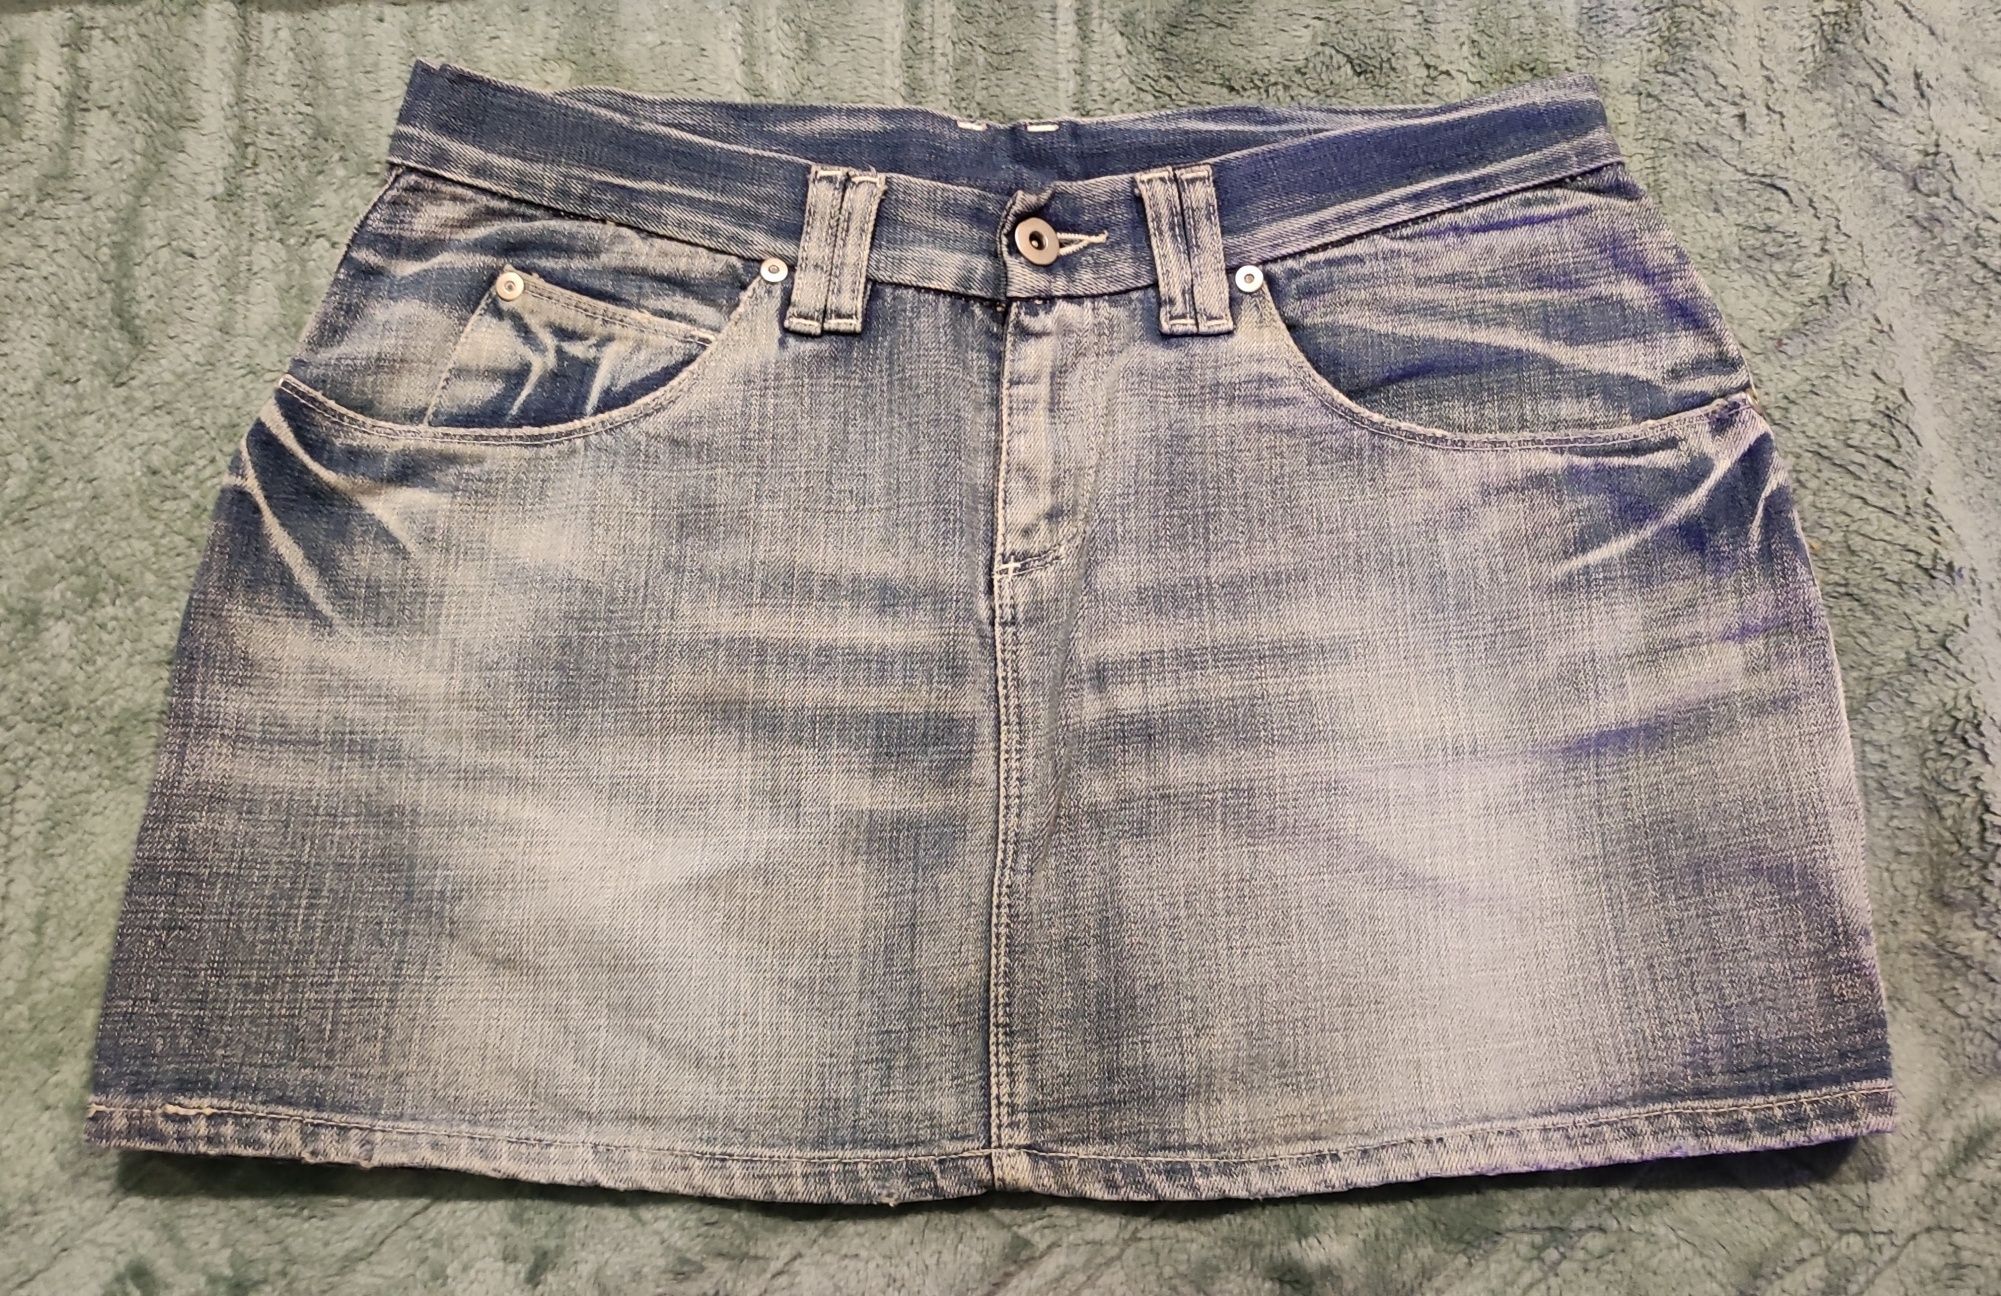 Spódnica mini jeans jasny 42 kieszenie lato HM damska wiosna niebieska